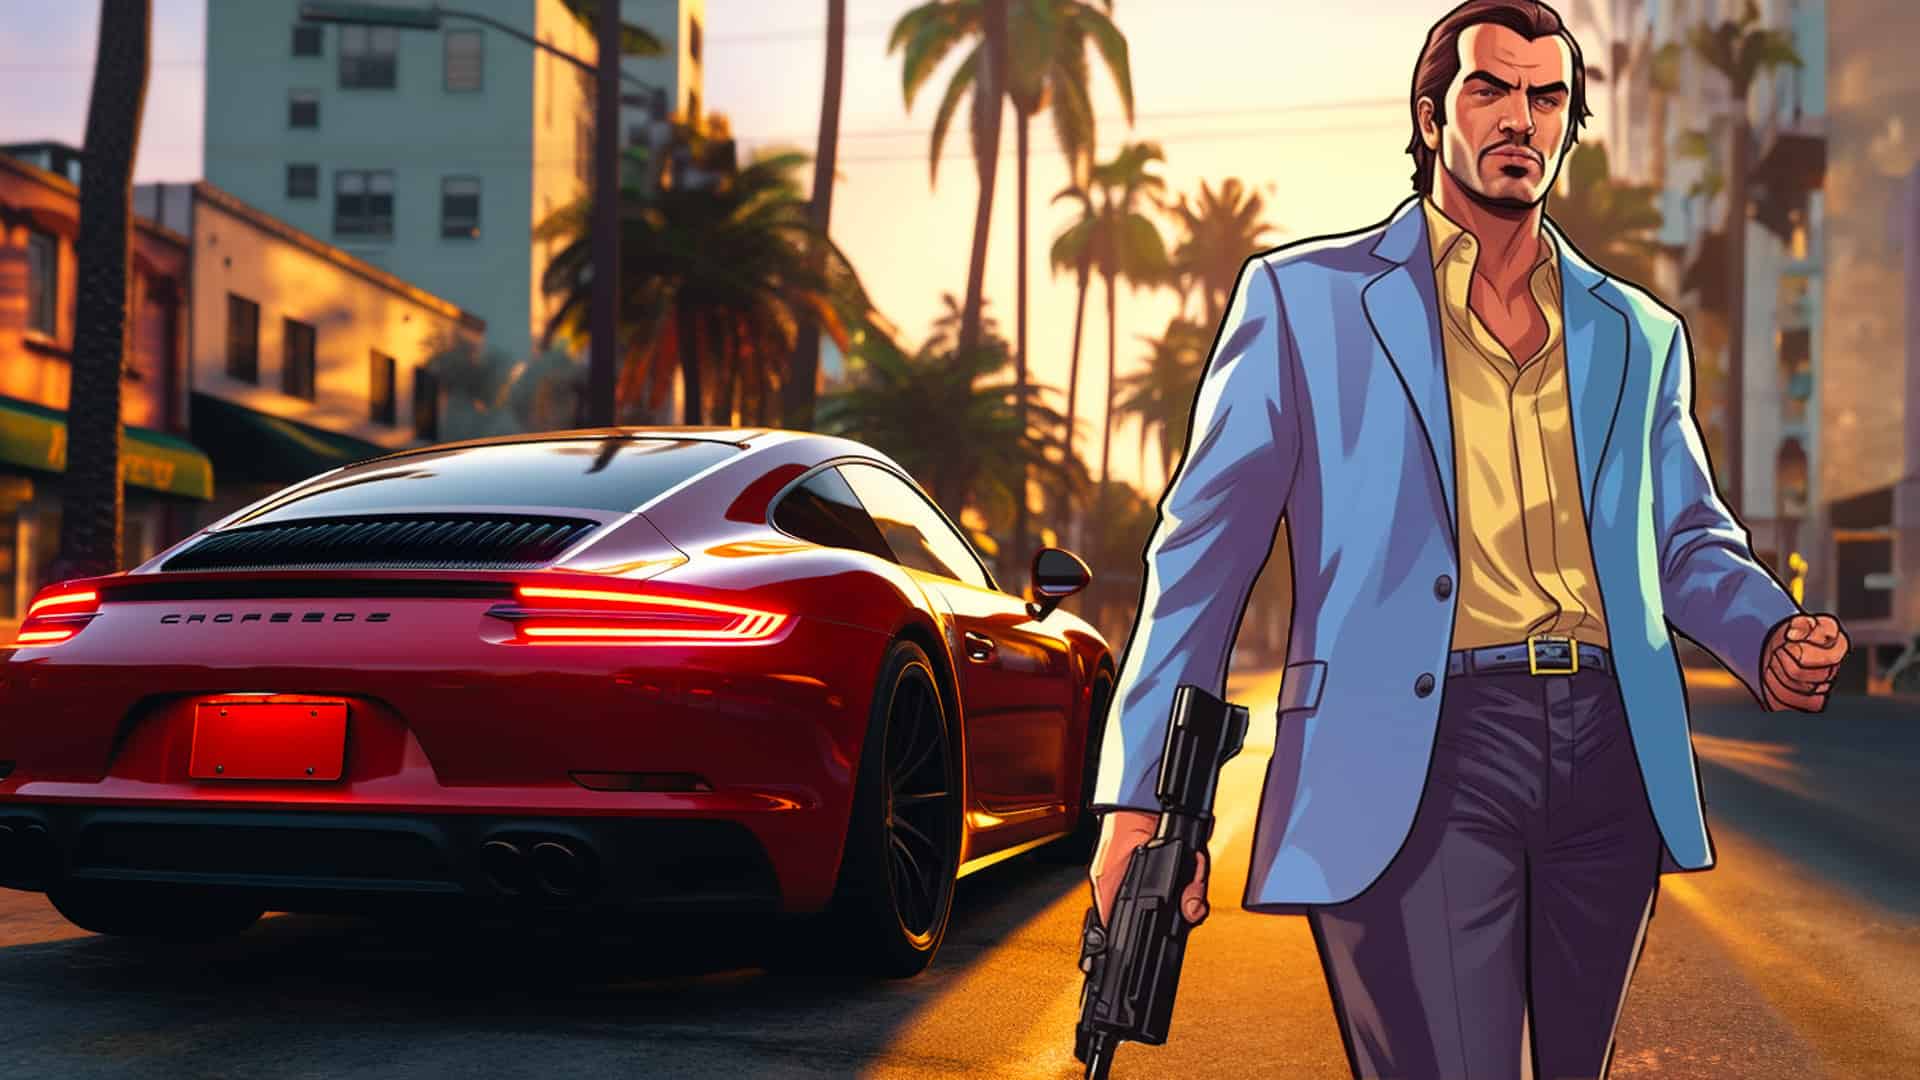 Vice City Revival The Masterstroke in GTA 6's Development